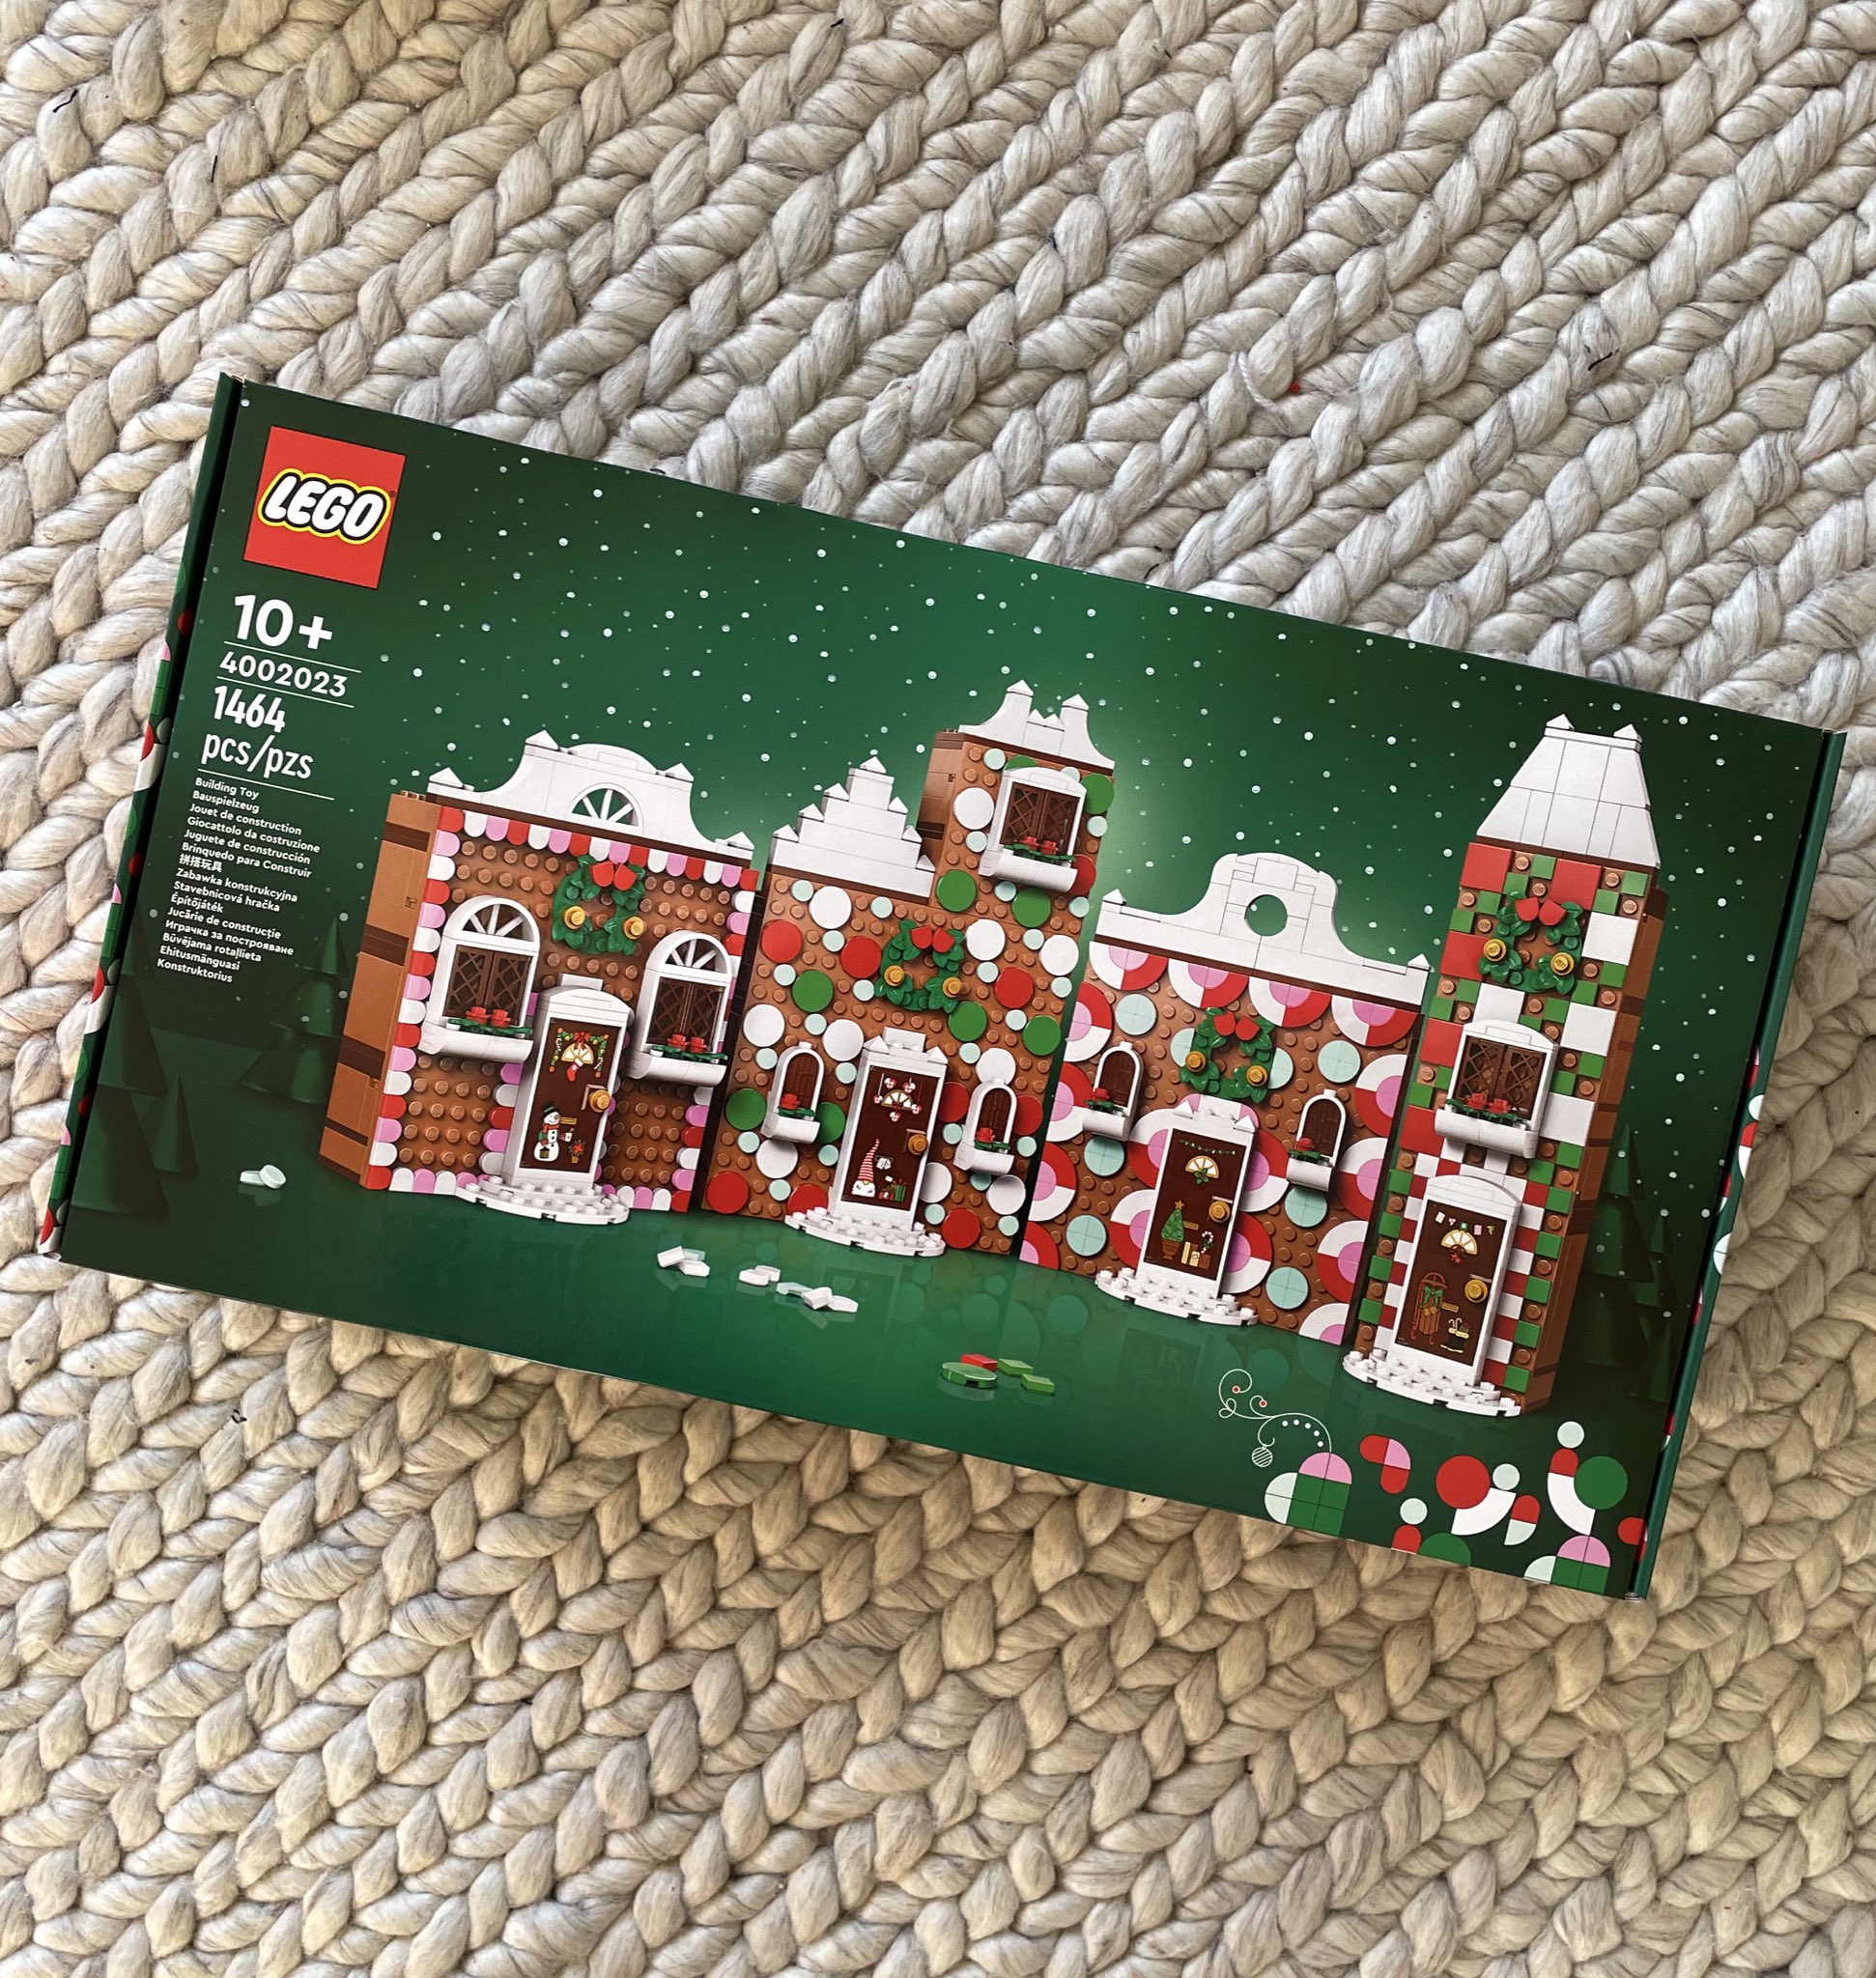 https://www.thebrickfan.com/wp-content/uploads/2023/11/LEGO-Seasonal-Employee-Gift-2023-DOTS-Gingerbread-House-4002023.jpg